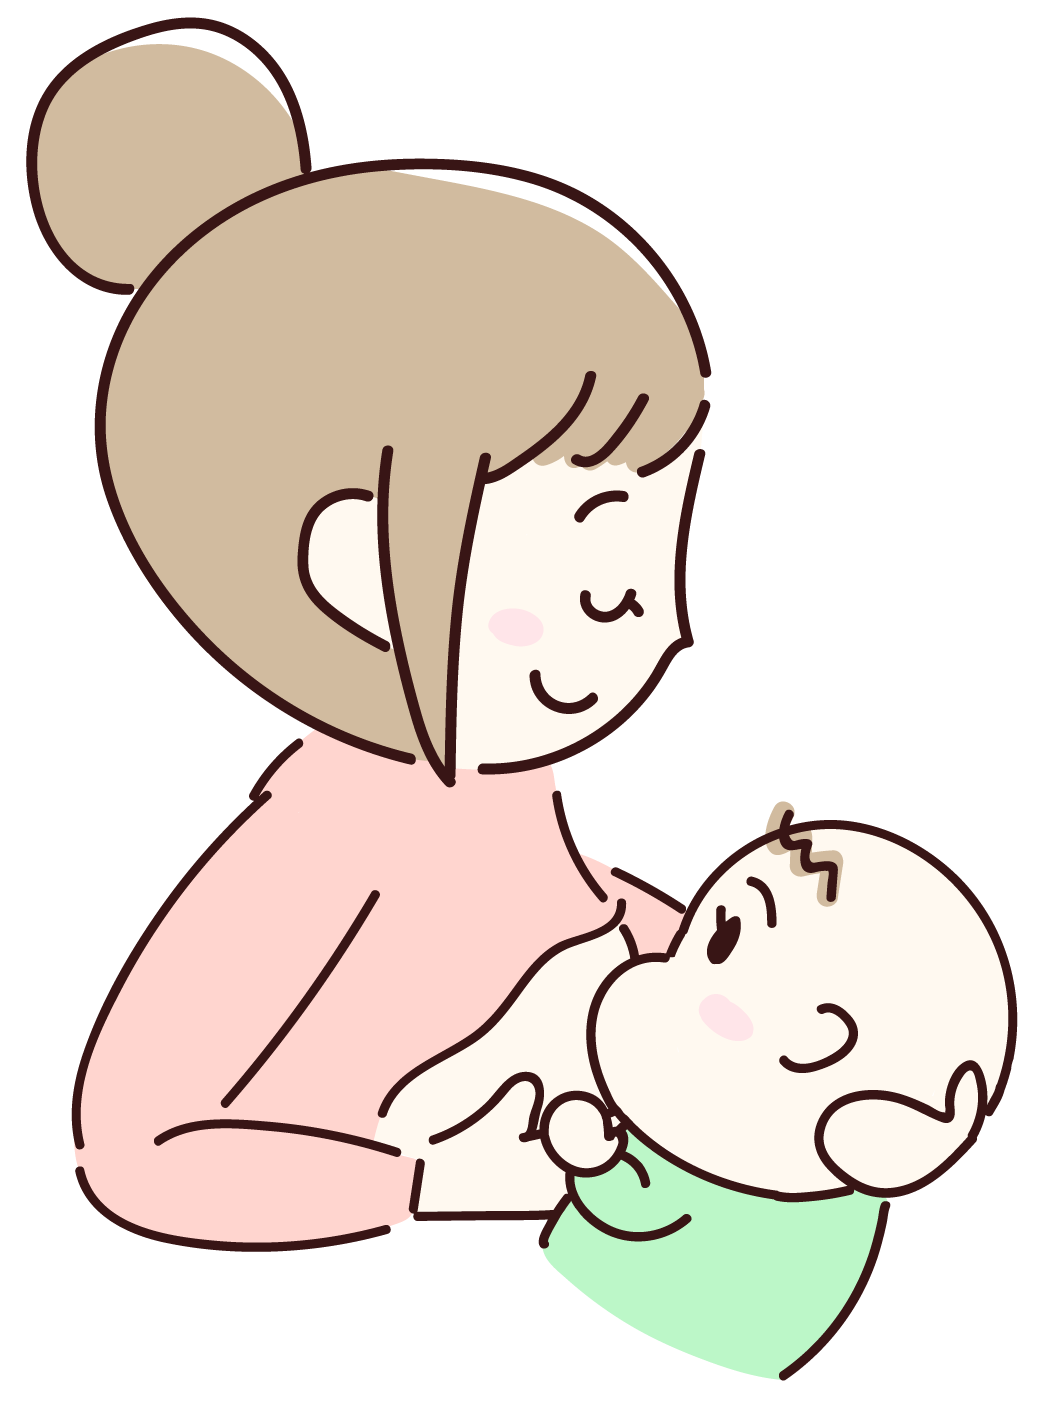 イラスト解説 授乳のやり方 手順とポイント ミルベビー